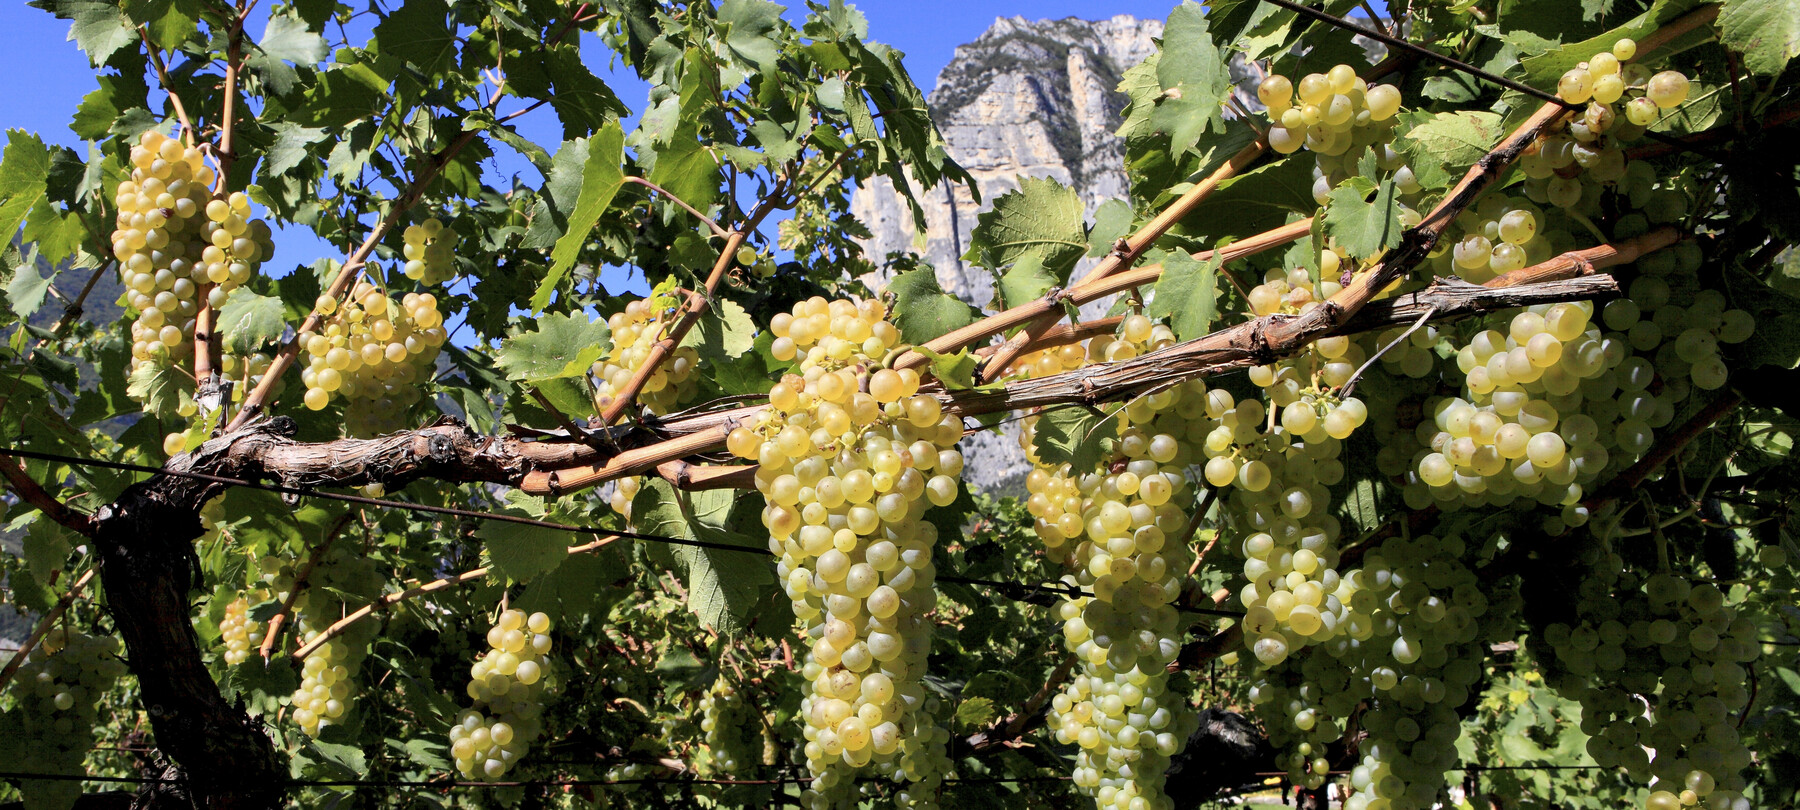 Toblino Winery, a Trentino experience